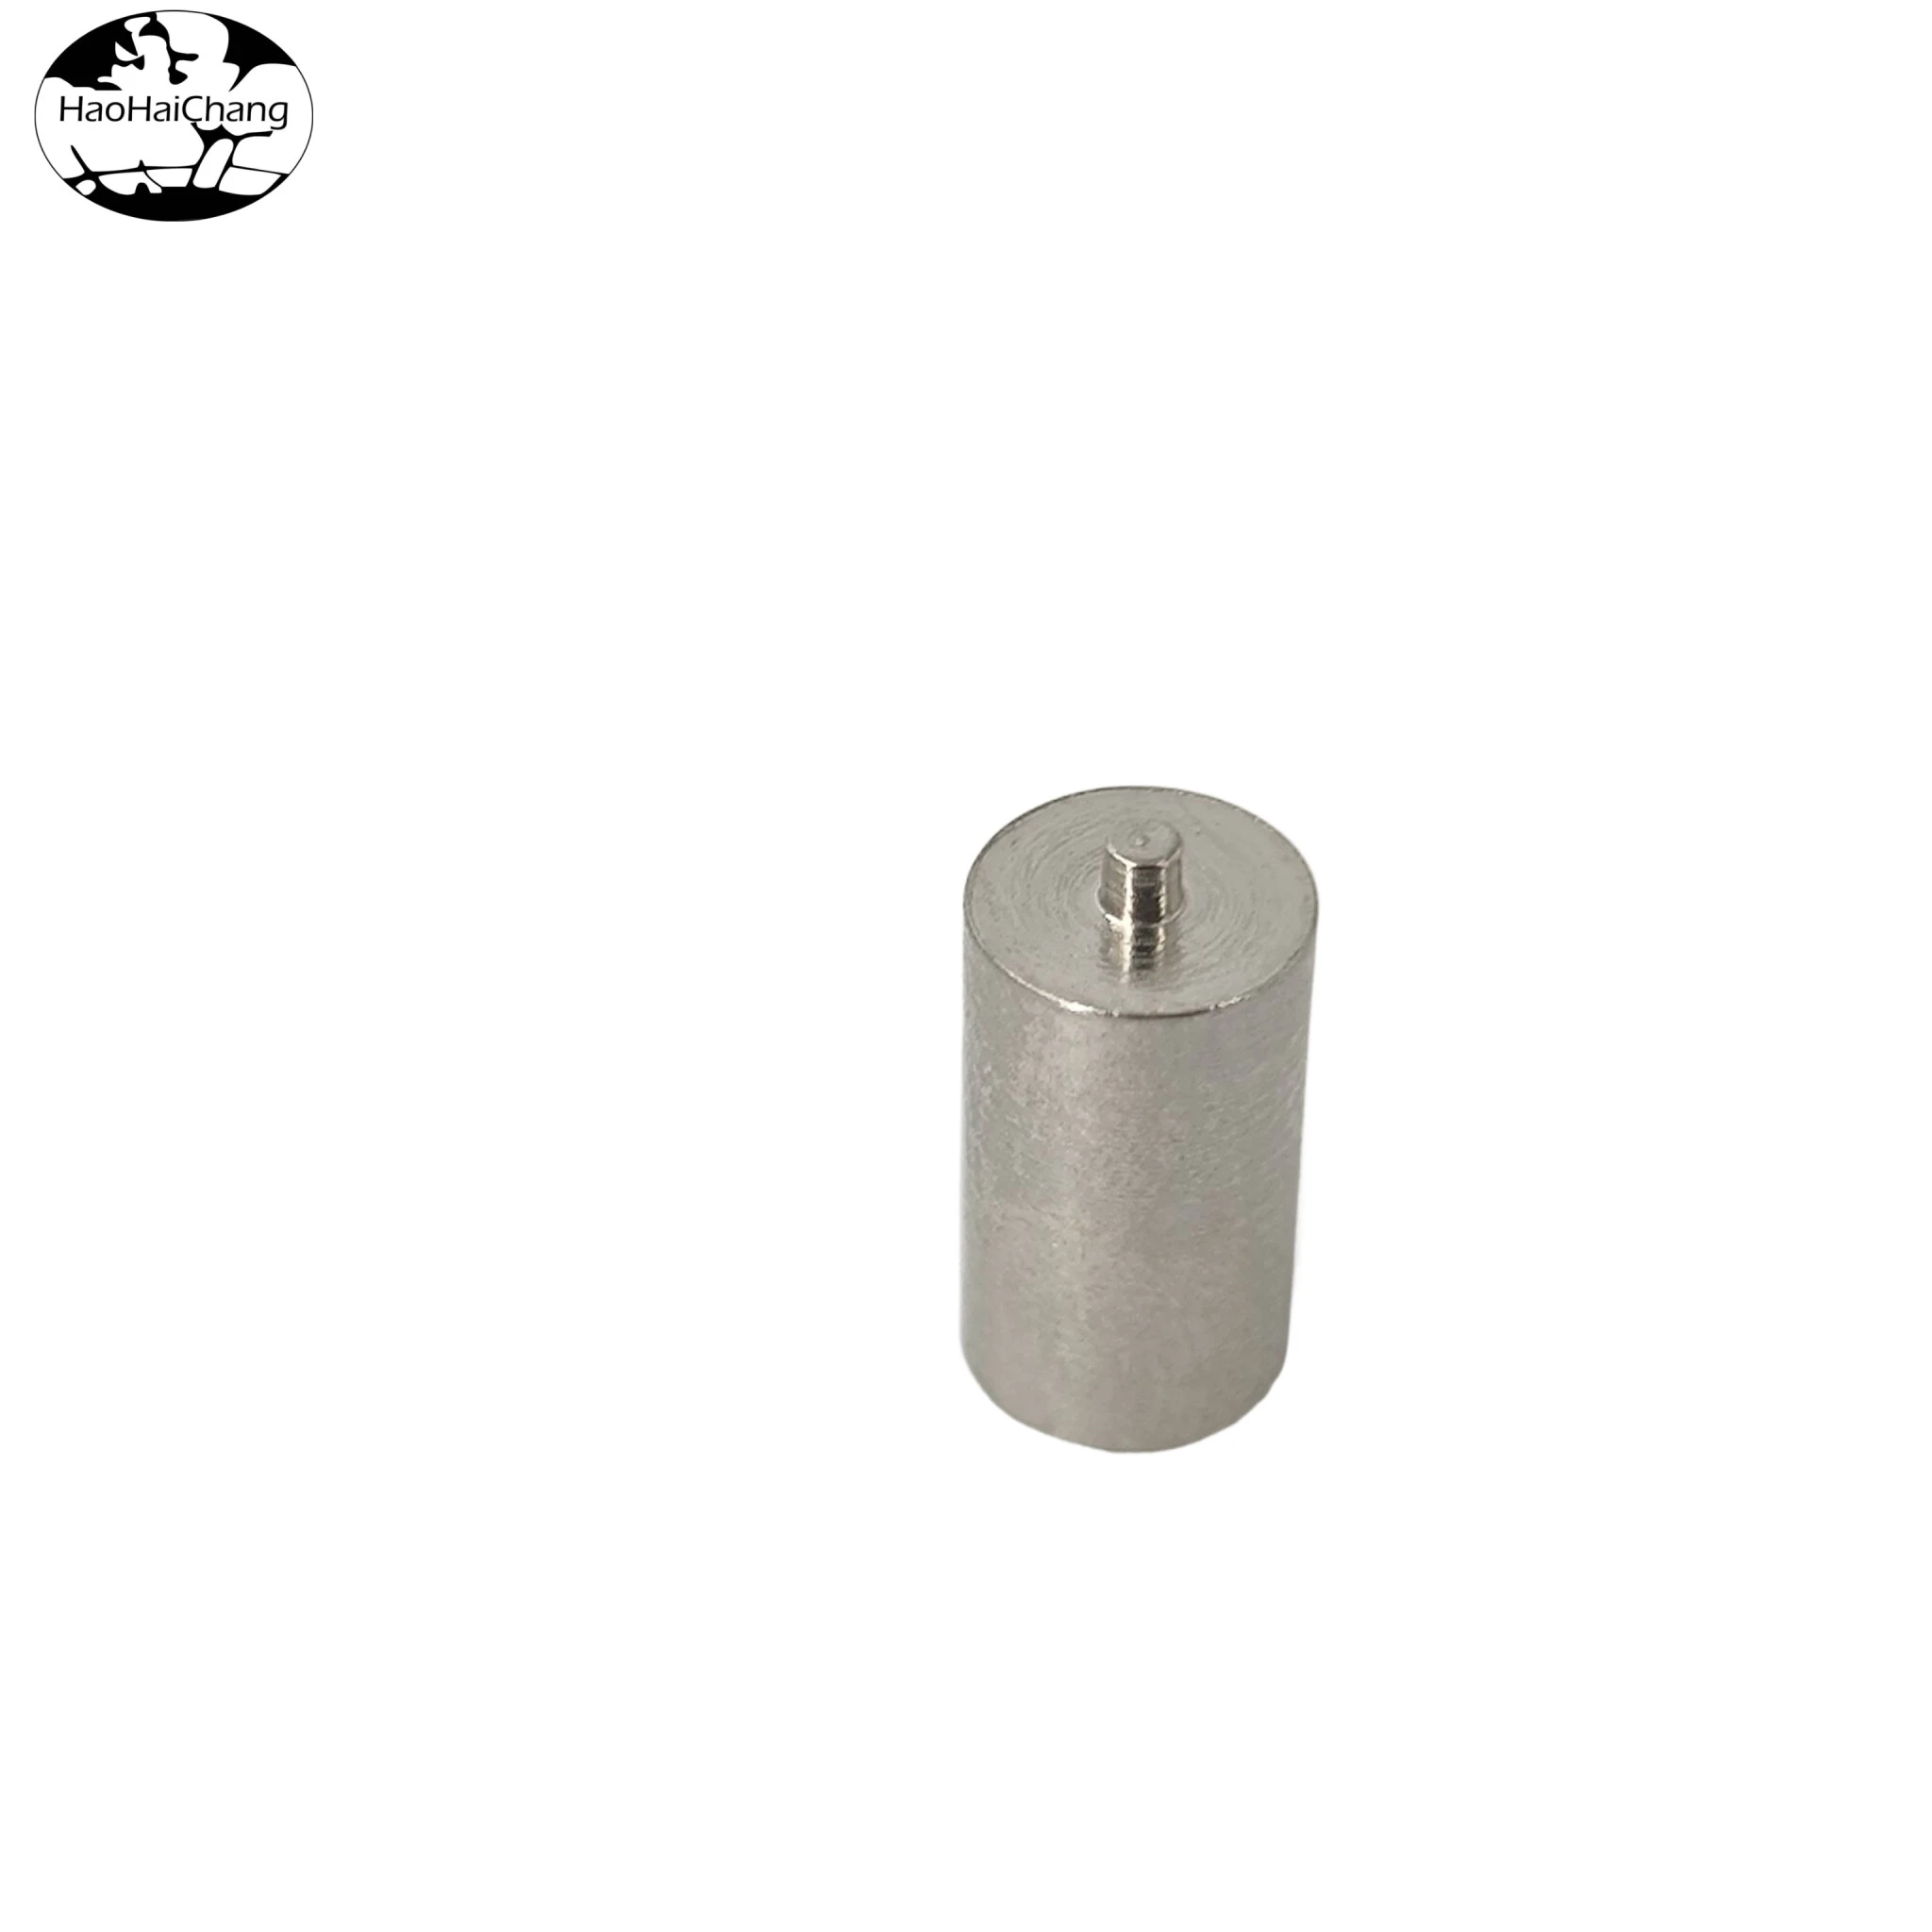 HHC-468 Stainless Steel Internal Thread Welding Nut Column Headless Spot Welding Stud